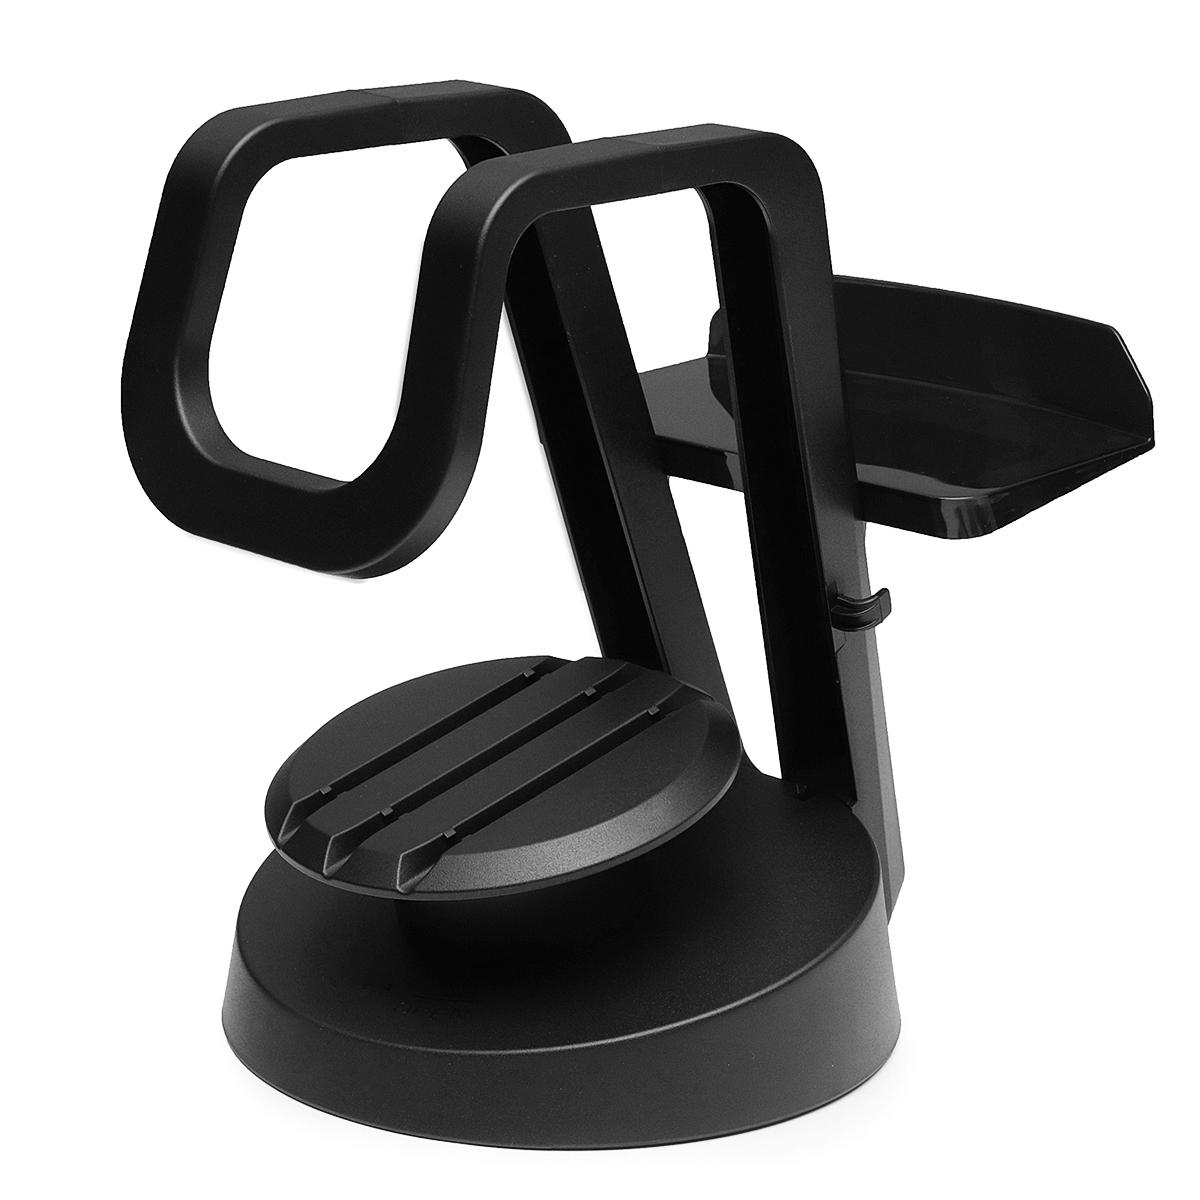 Universal VR Brille Stand Holder für PS VR / Oculus Rift / HTC Vive / Gear VR